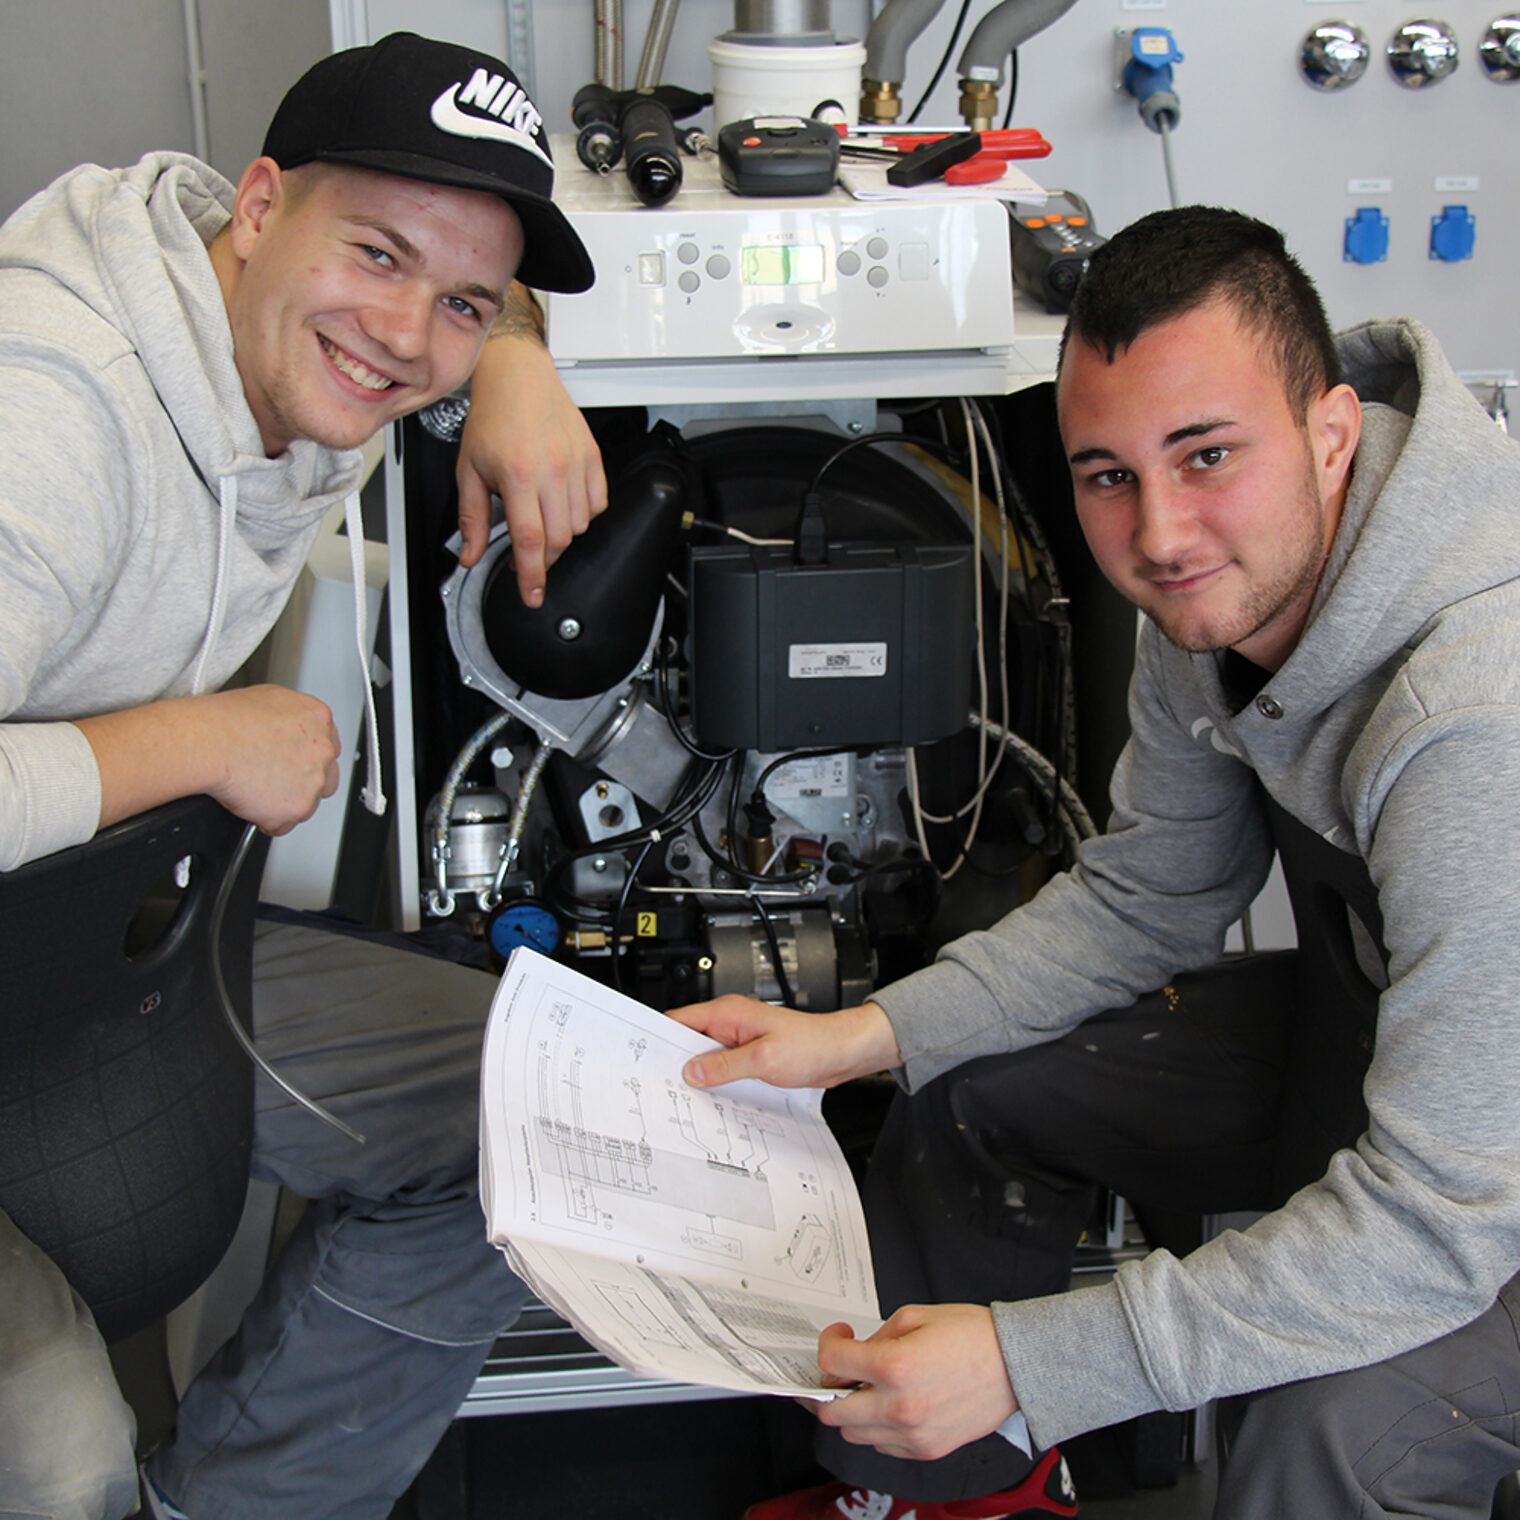 Zwei junge Anlagenmechaniker für Sanitär-, Heizungs- und Klimatechnik knien vor einem Gerät und lächeln in die Kamera.